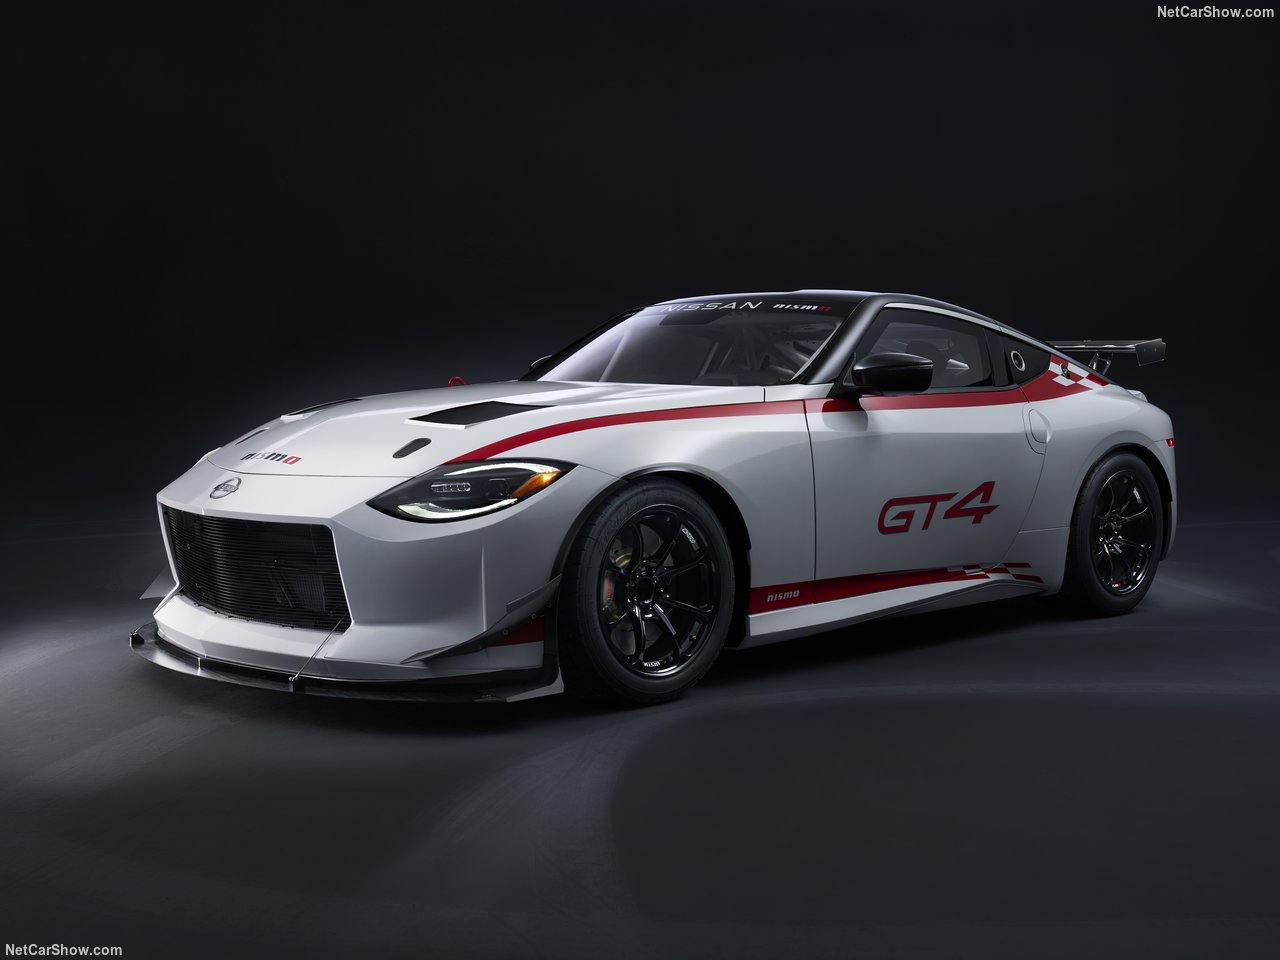 美國 SEMA 改裝大展 Nissan 展出最新 Z GT-4 比賽車